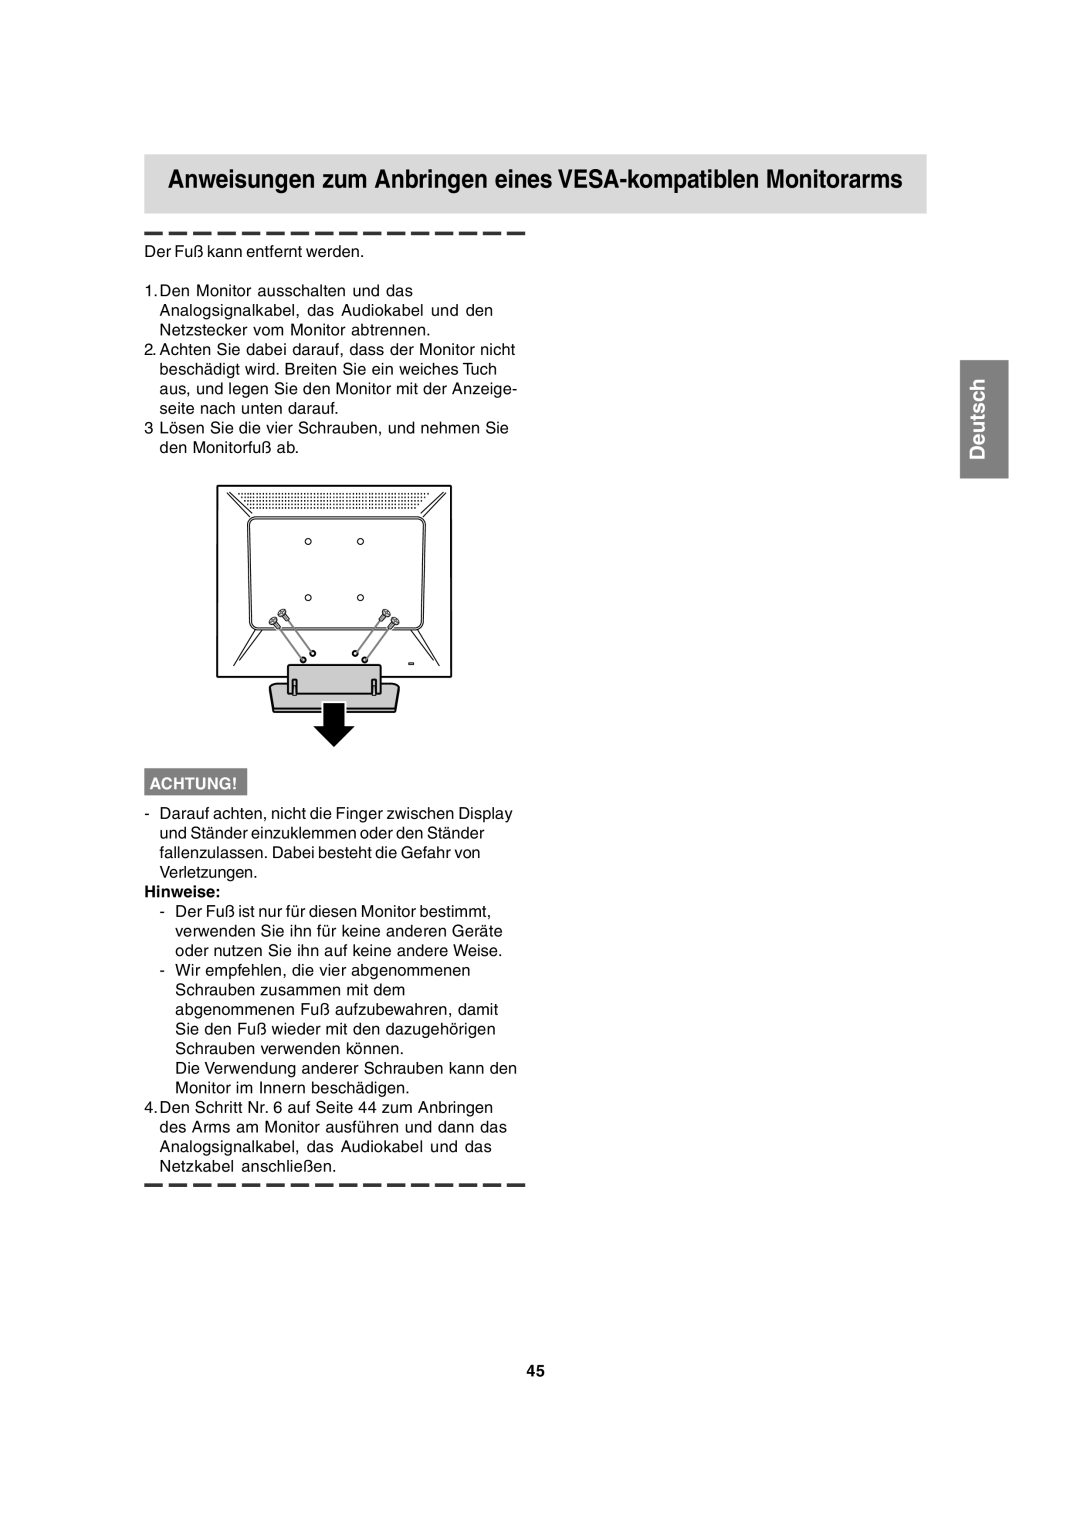 Sharp LL-T15A4 operation manual Anweisungen zum Anbringen eines VESA-kompatiblen Monitorarms, Deutsch, Achtung, Hinweise 